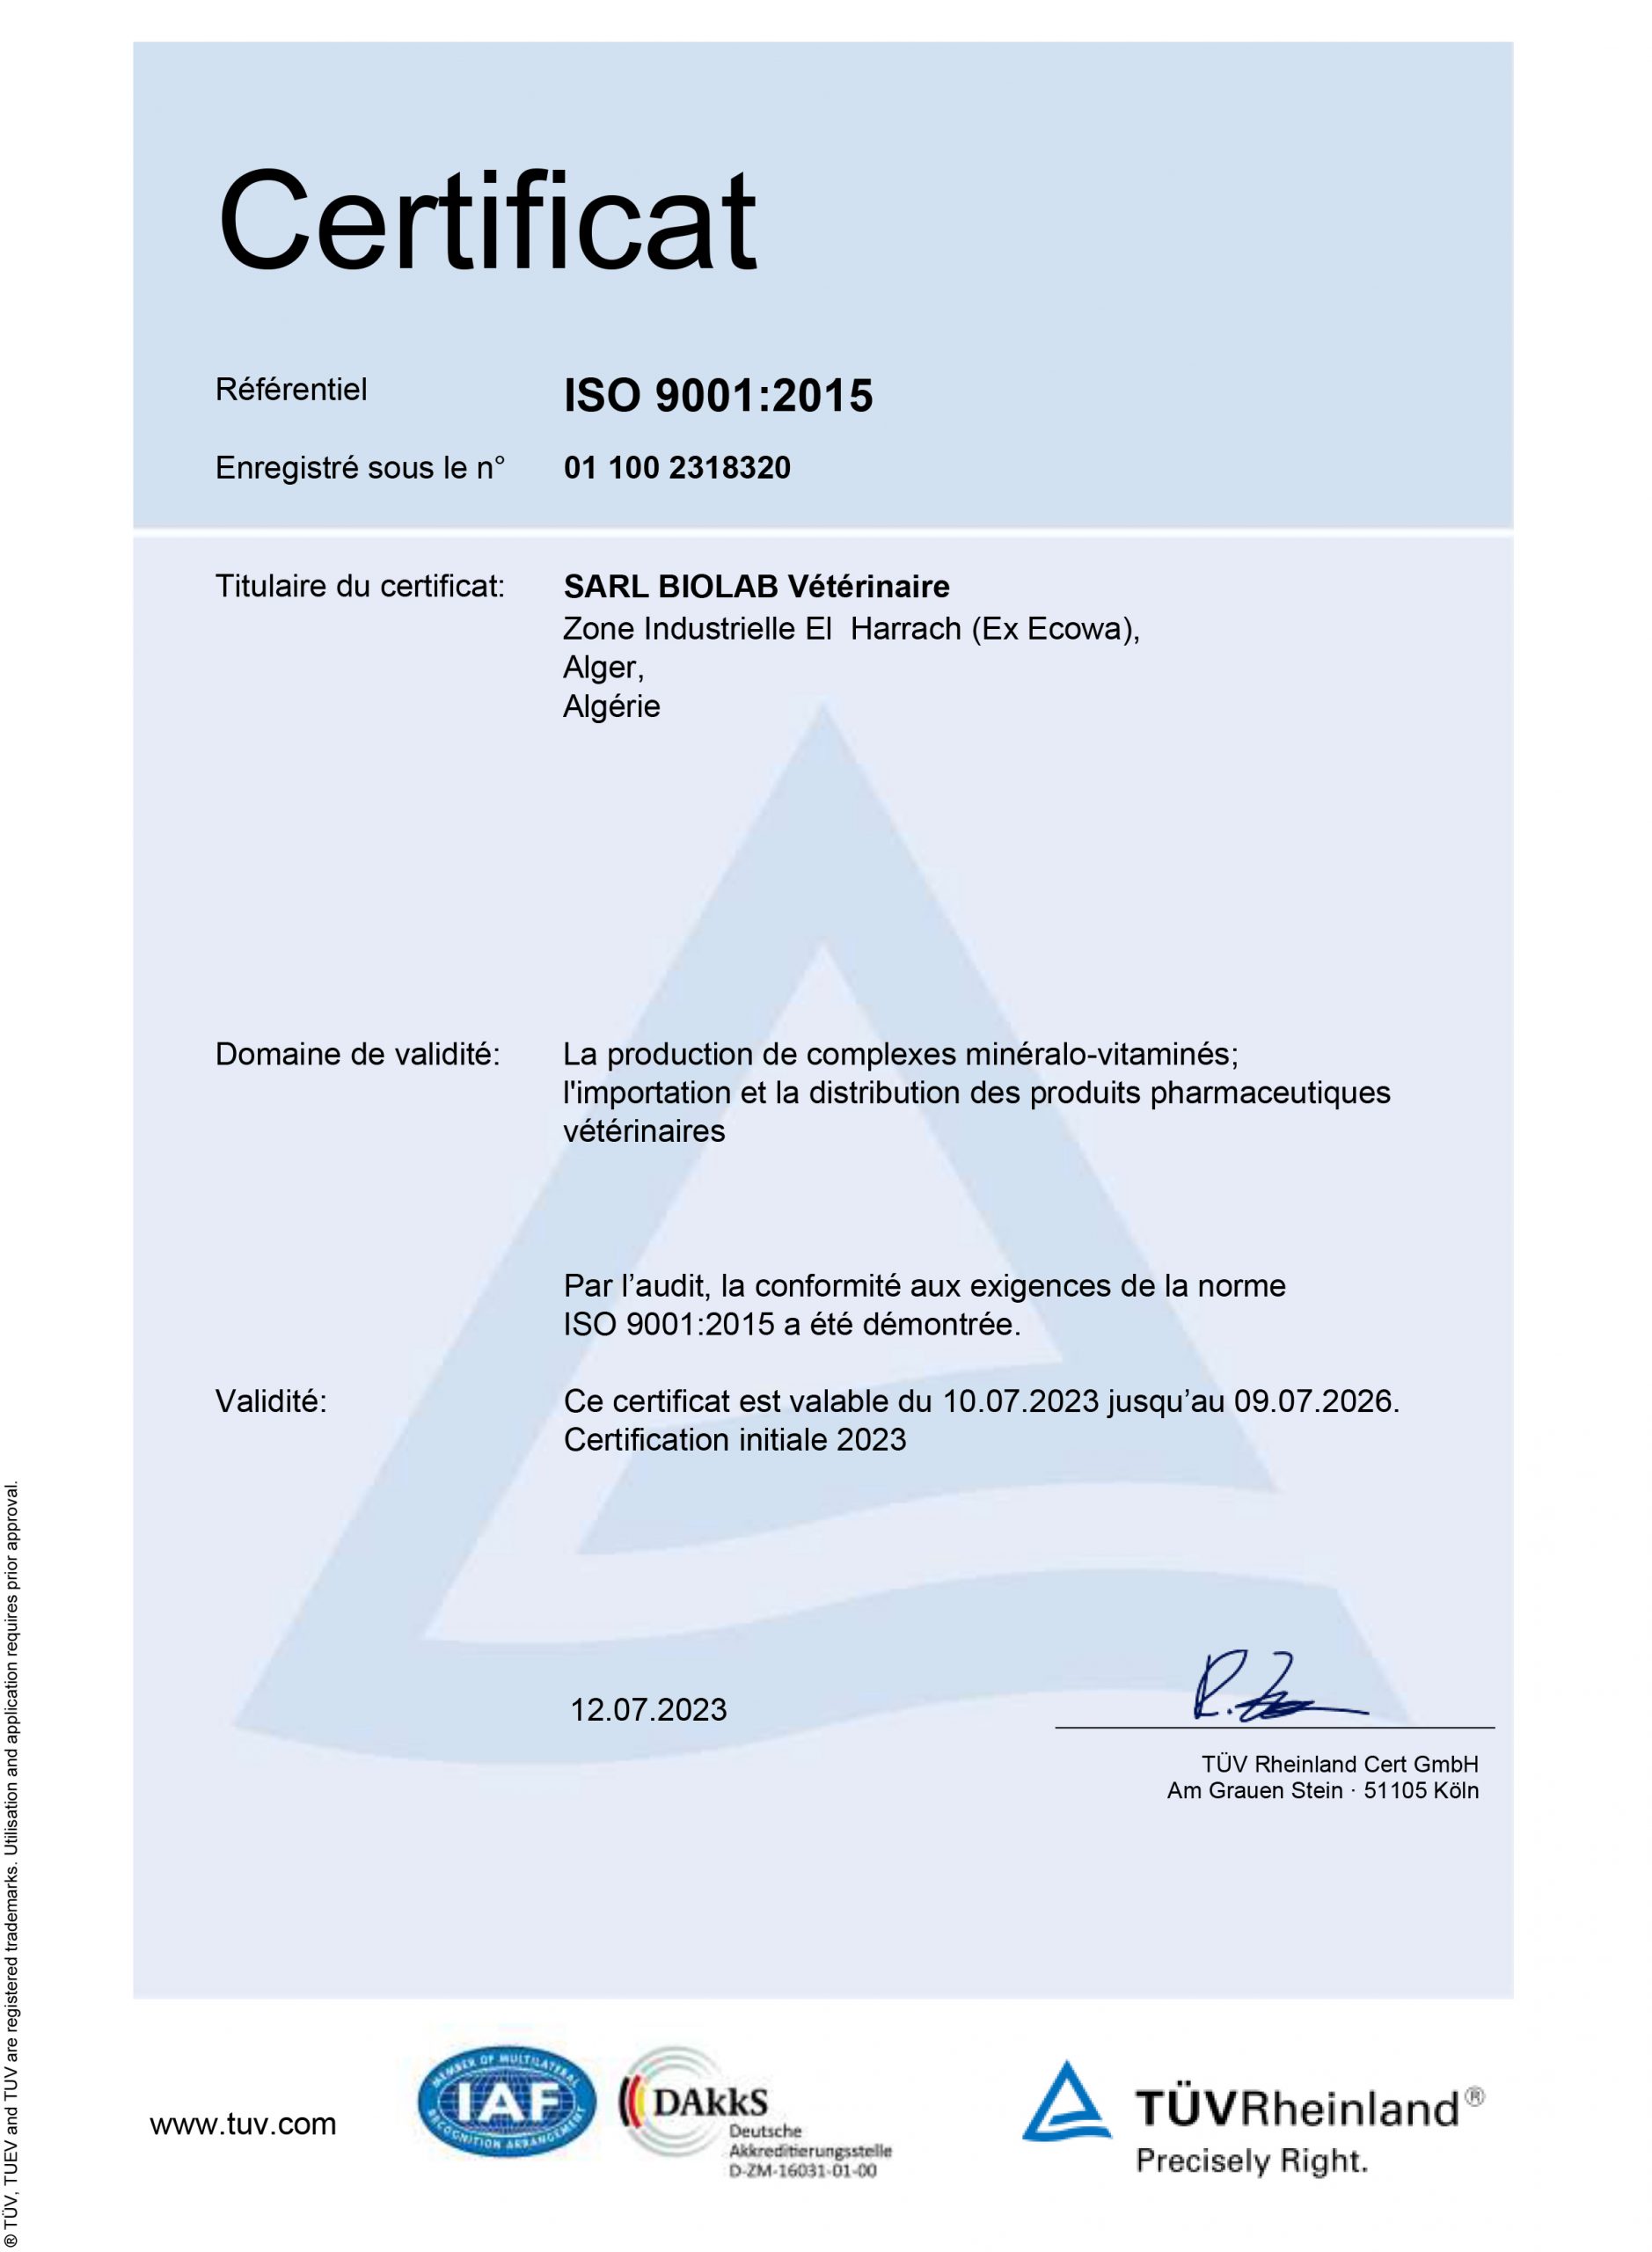 BIOLAB Vétérinaire annonce l’obtention de la certification ISO 9001:2015